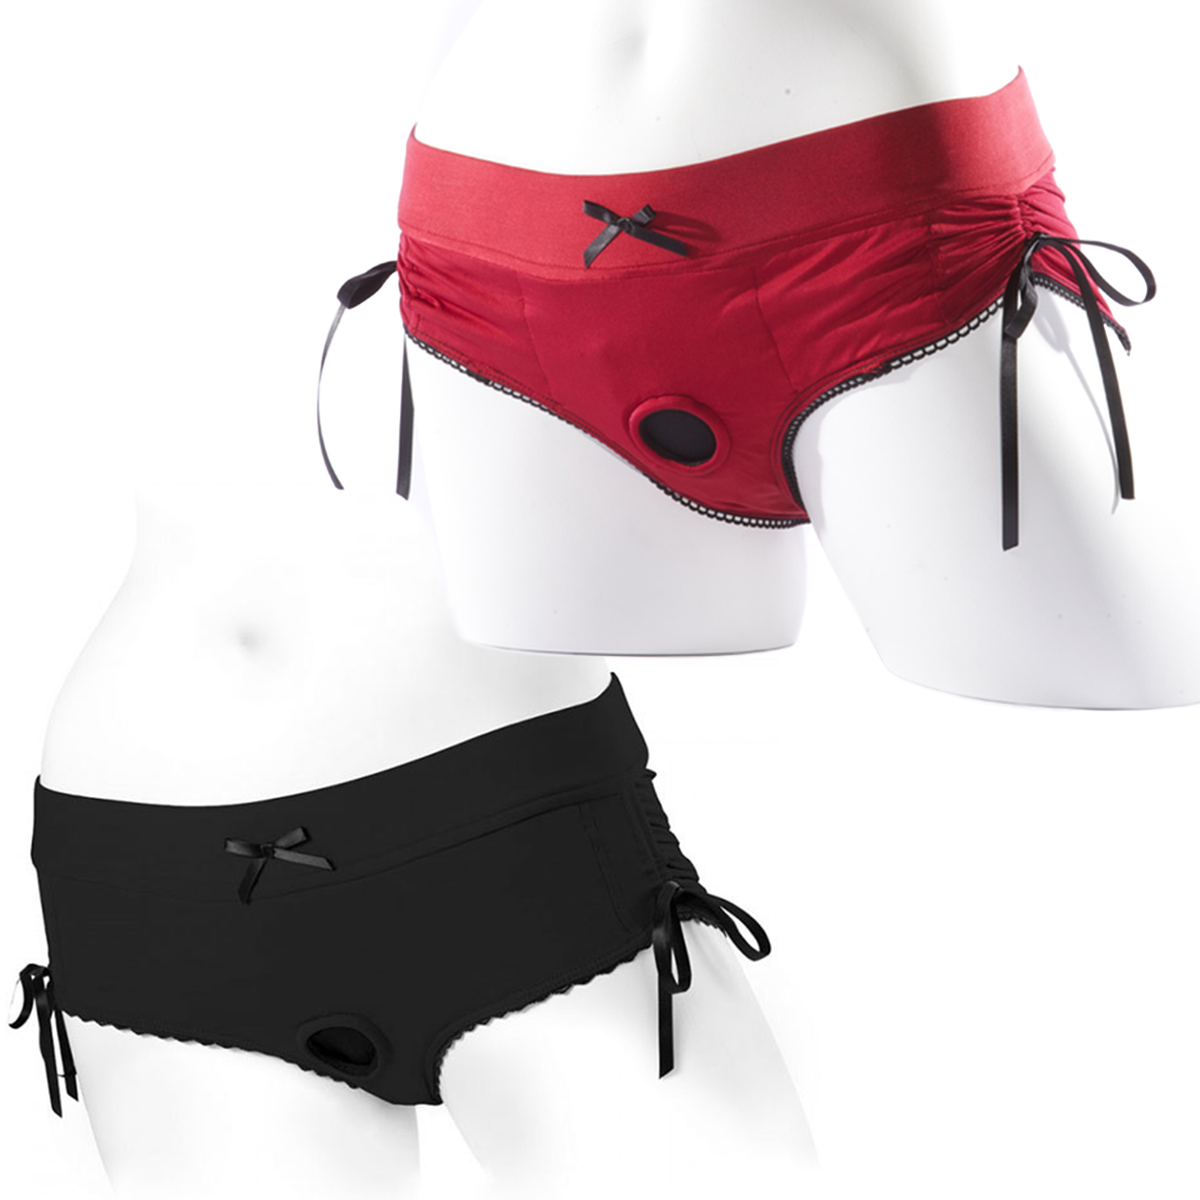 Sportsheets Silhouette Strapon Underwear Harness